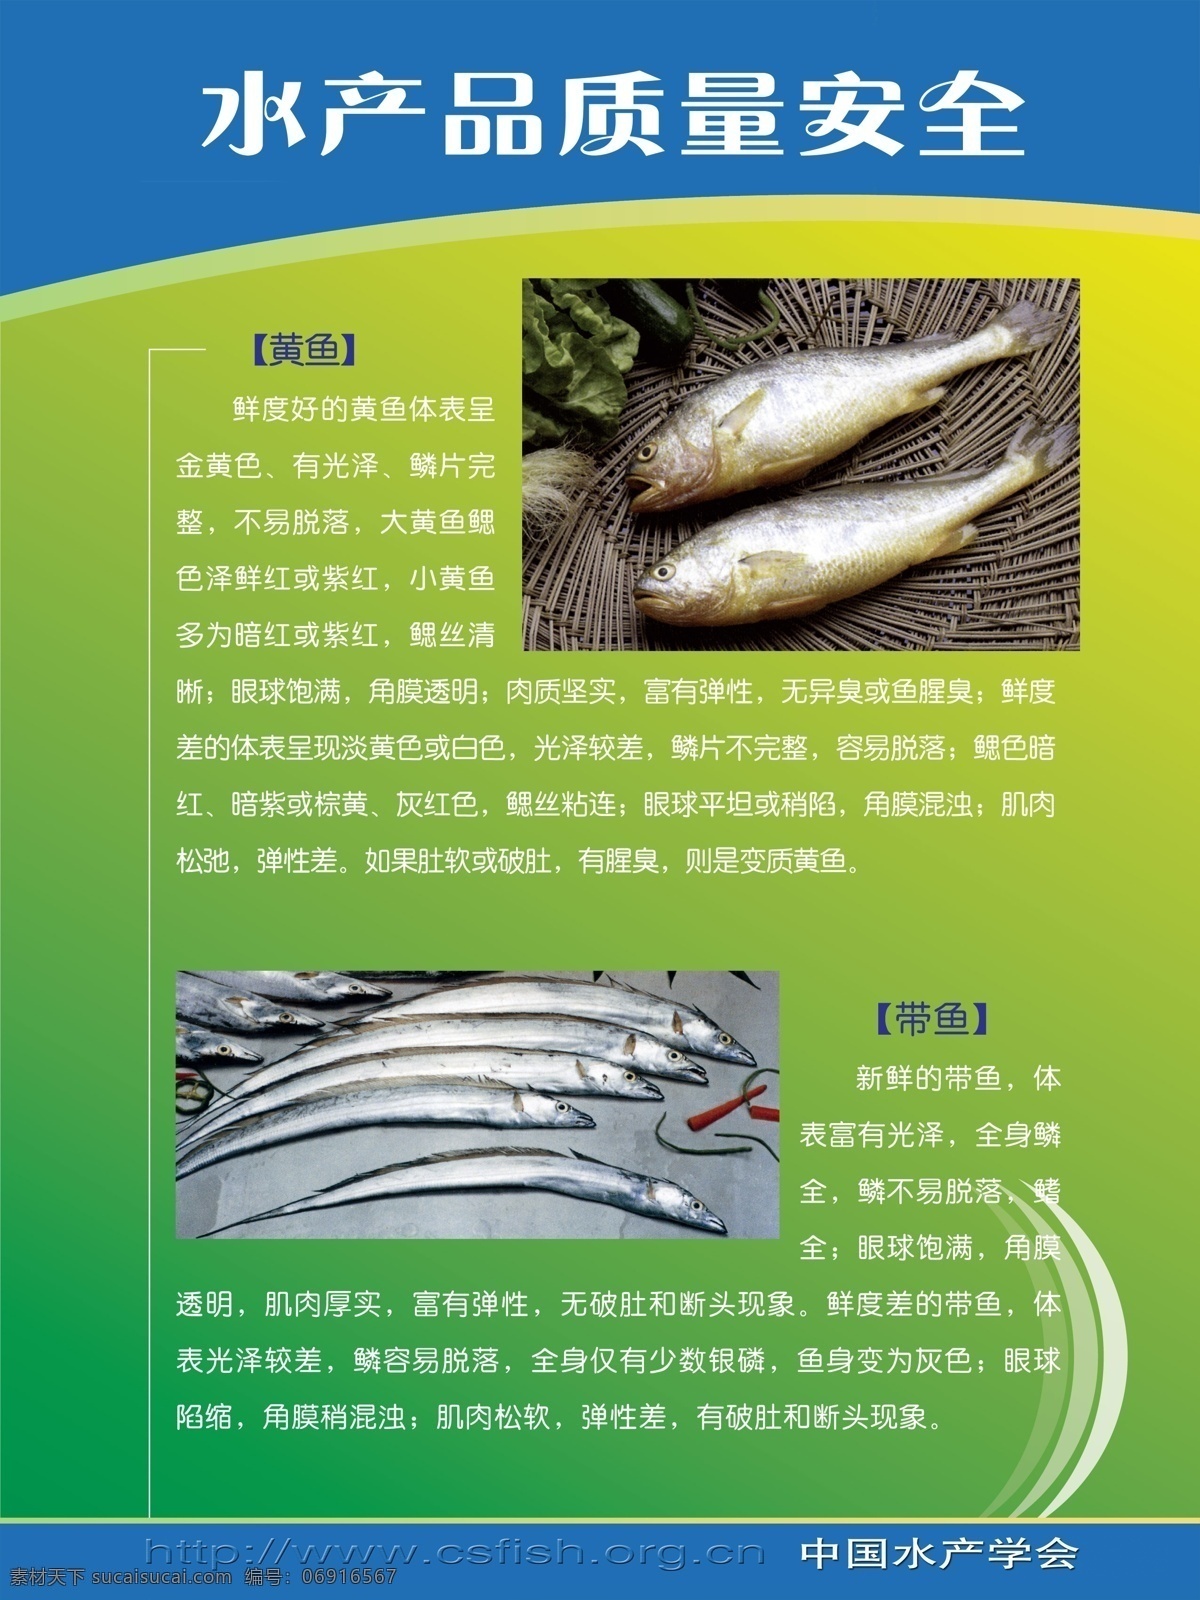 水产品安全 质量安全 水产品 带鱼 黄鱼 水产品介绍 生物世界 鱼类